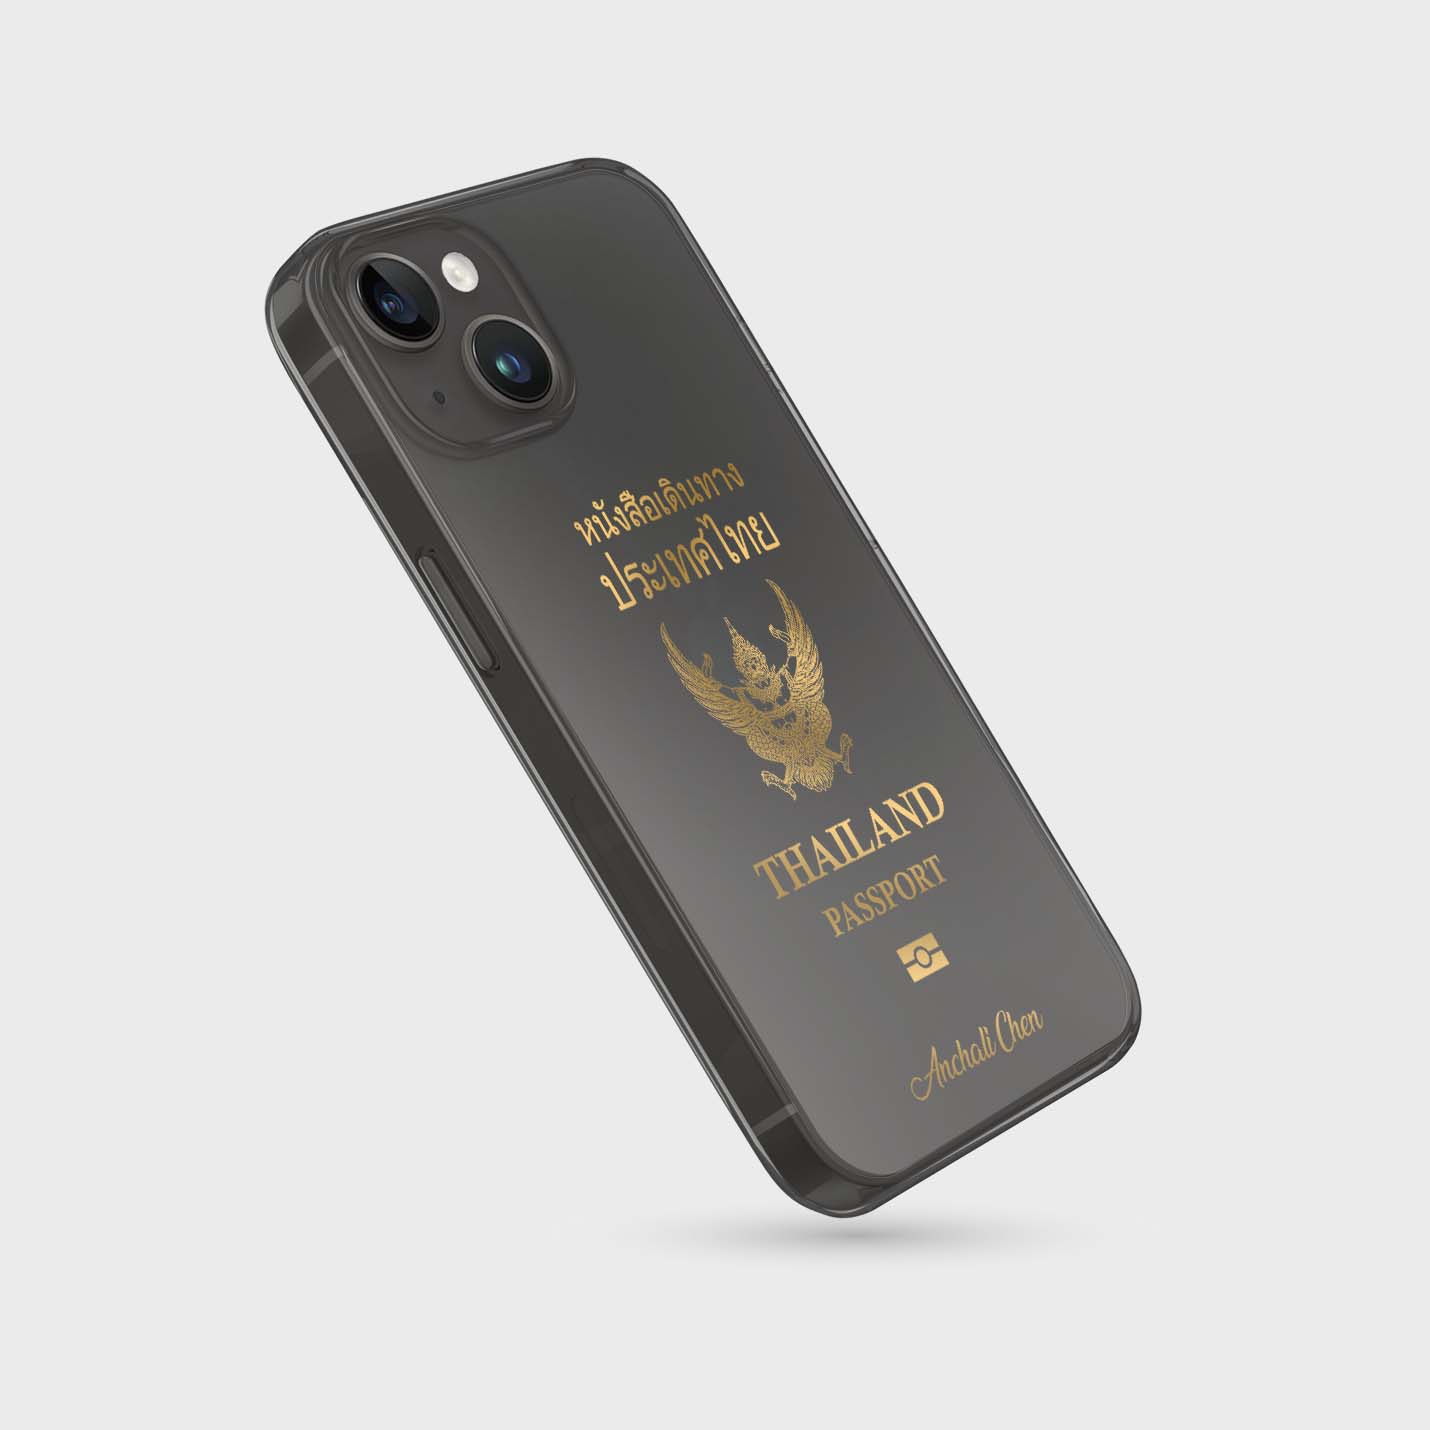 Handyhüllen mit Reisepass - Thailand - 1instaphone